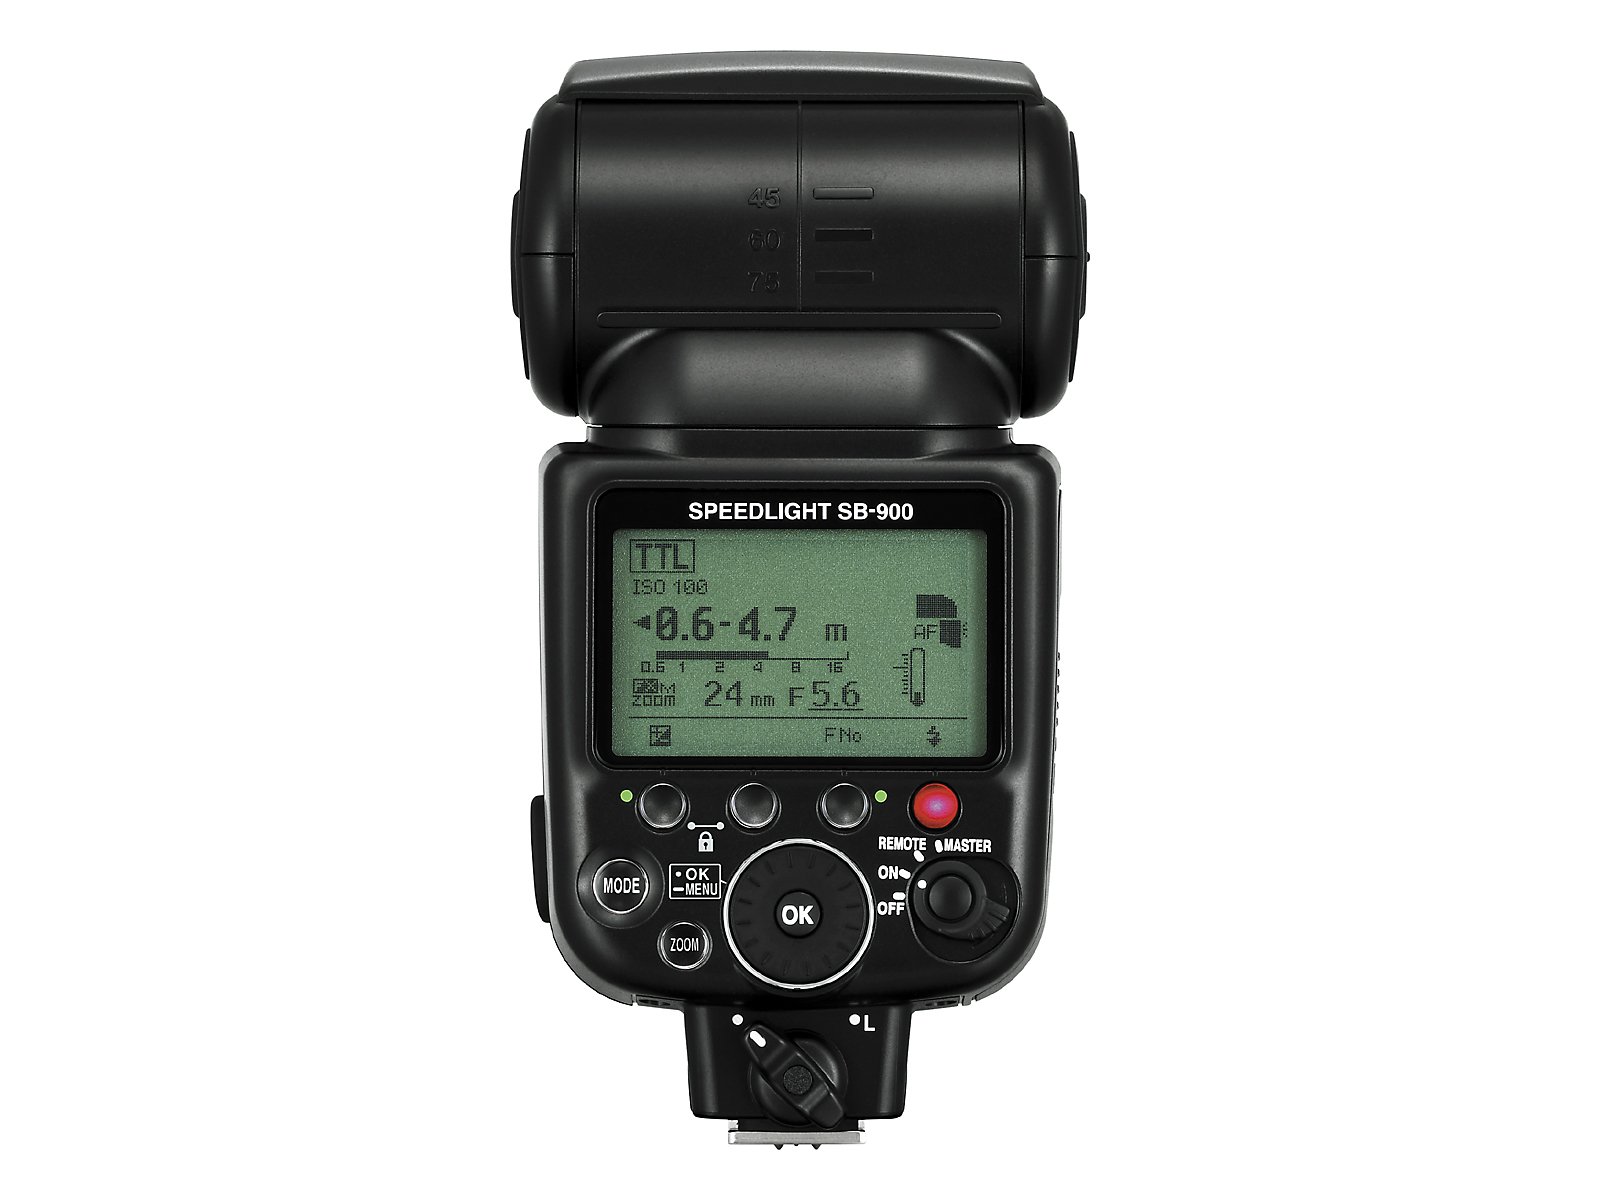 Nikon SB-900 AF Speedlight Flash for Nikon Digital SLR Cameras